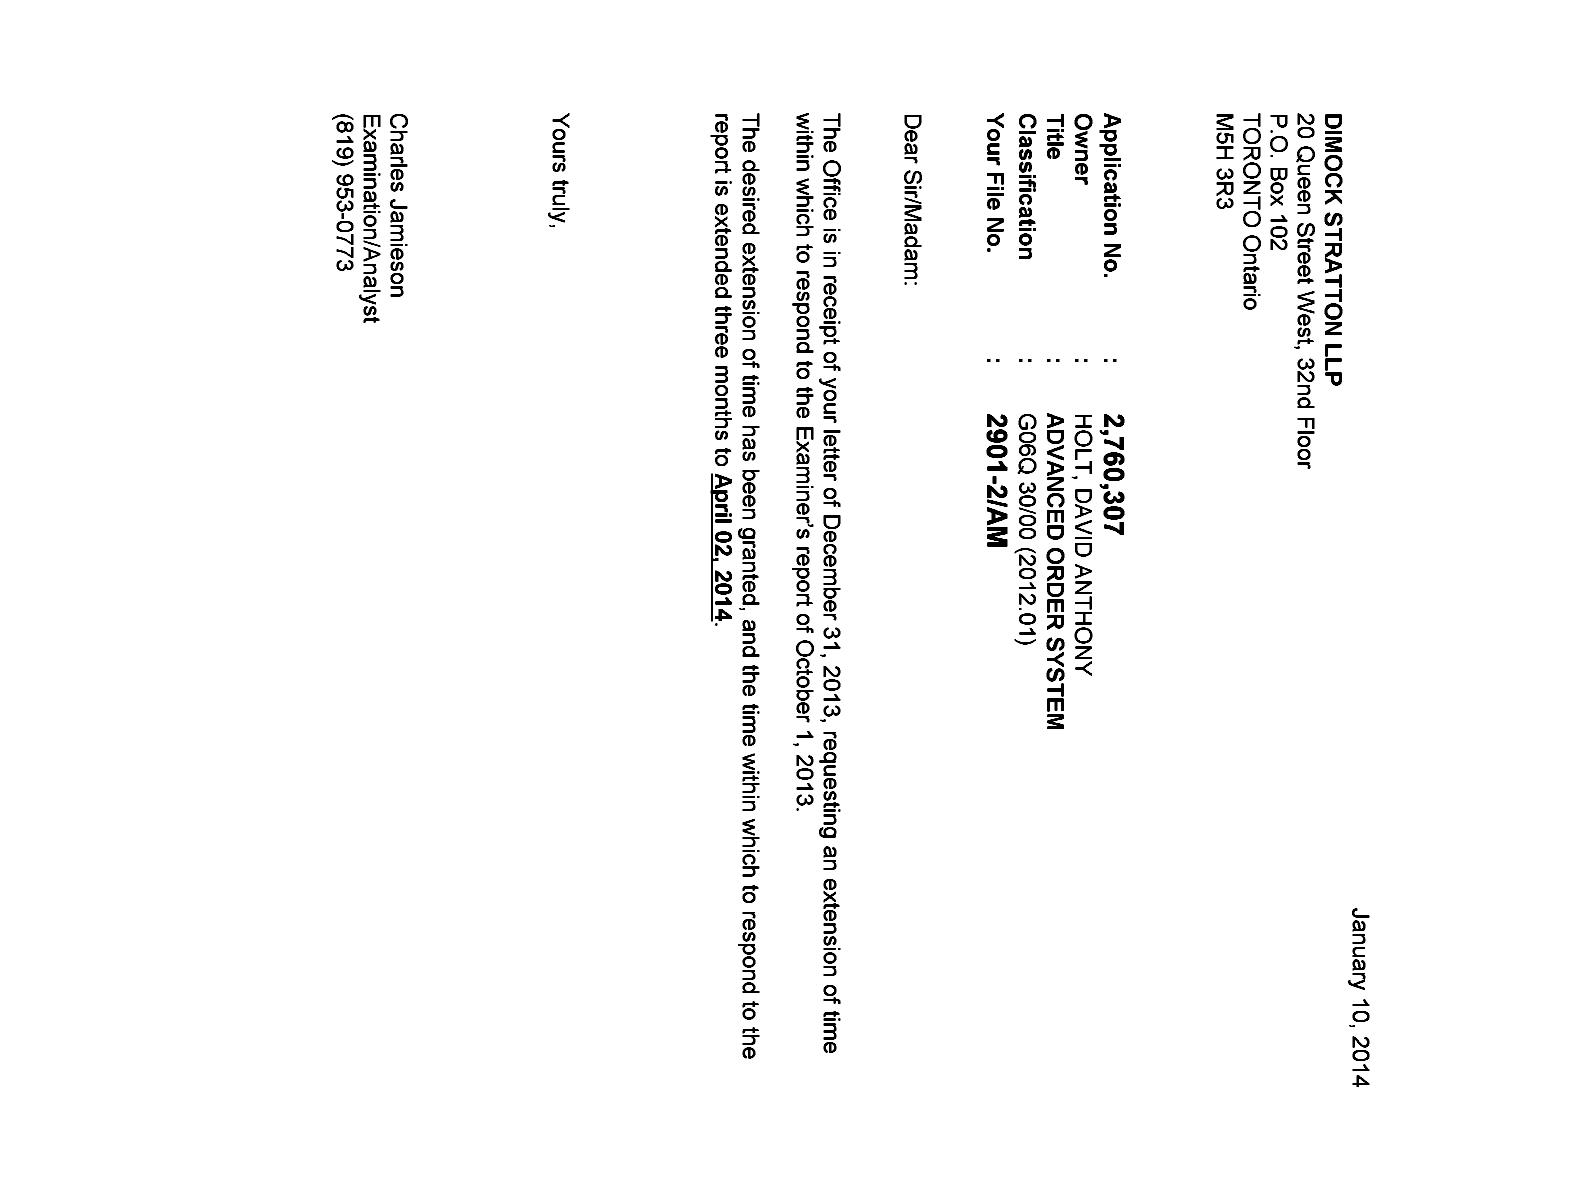 Document de brevet canadien 2760307. Correspondance 20131210. Image 1 de 1